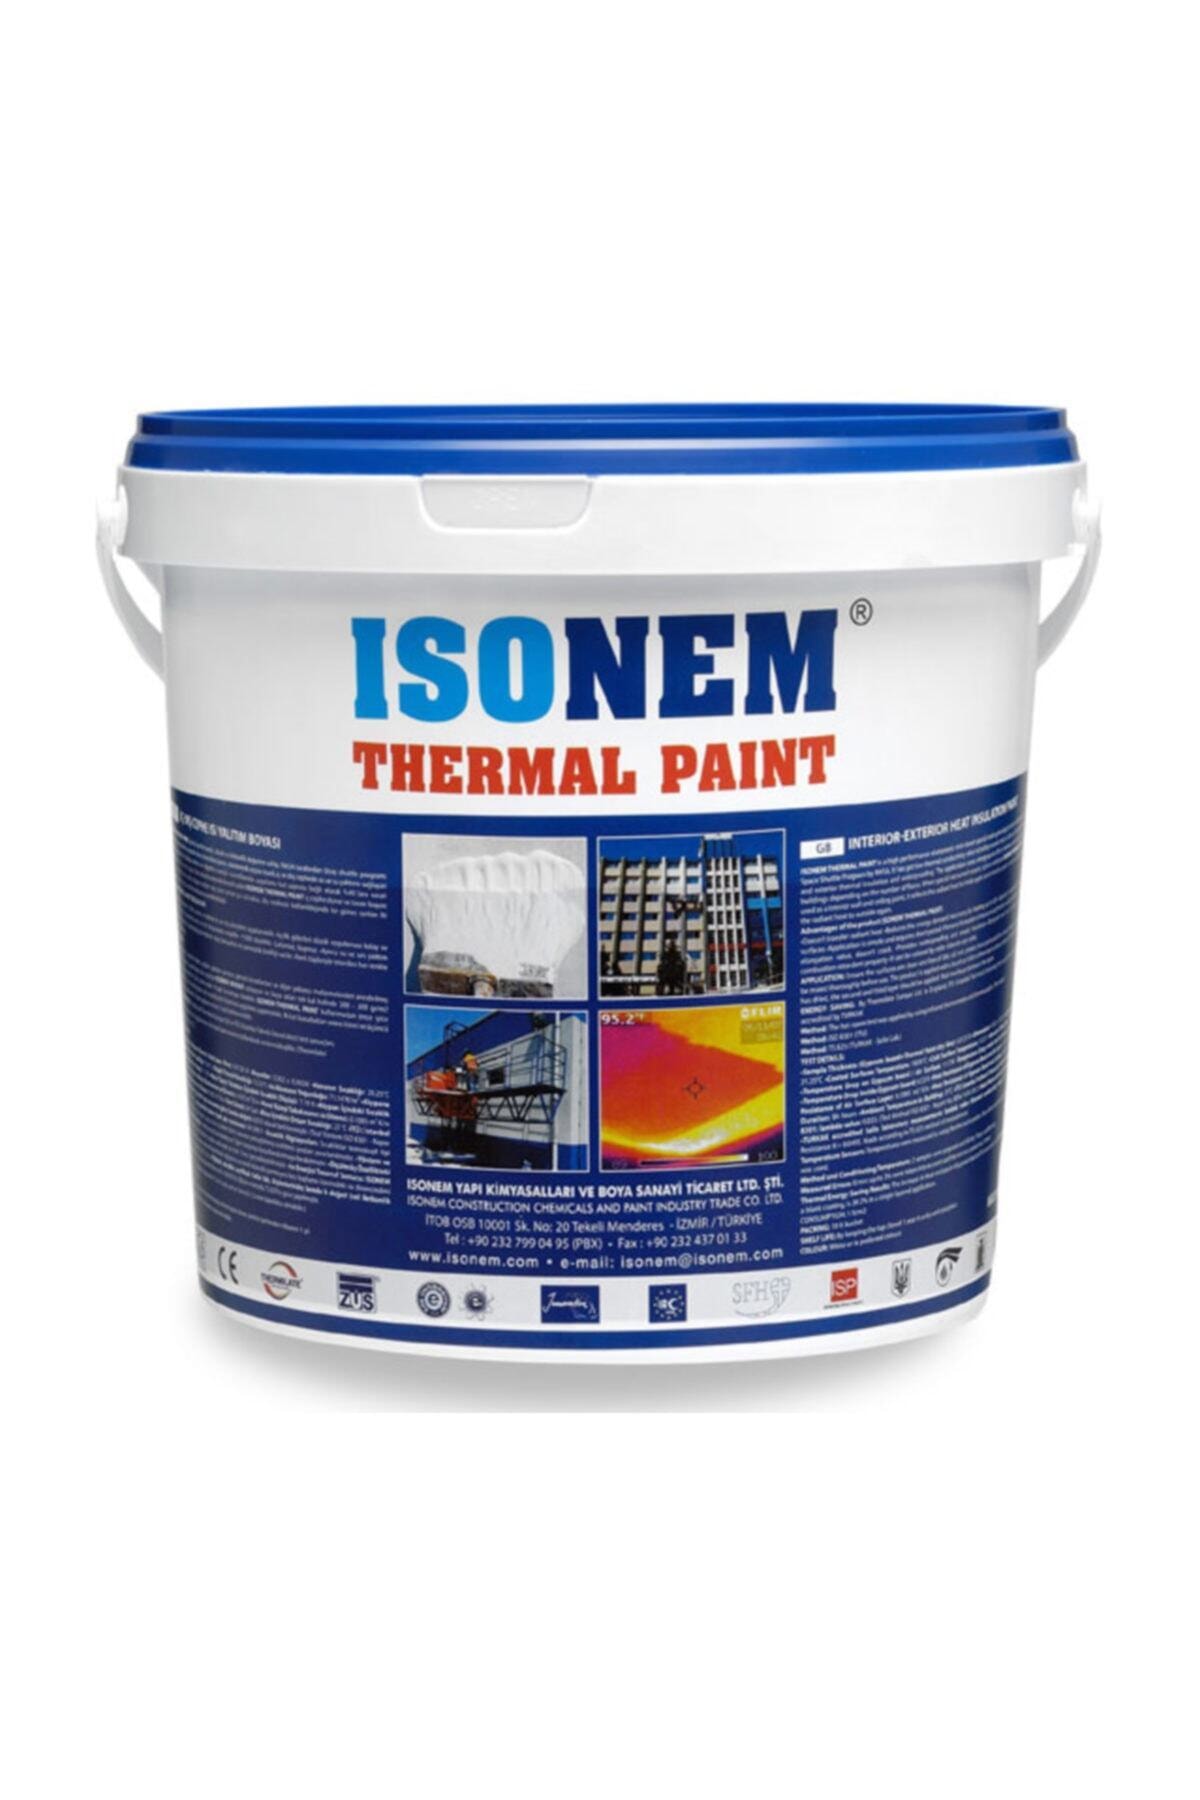 Isonem Thermal Paint